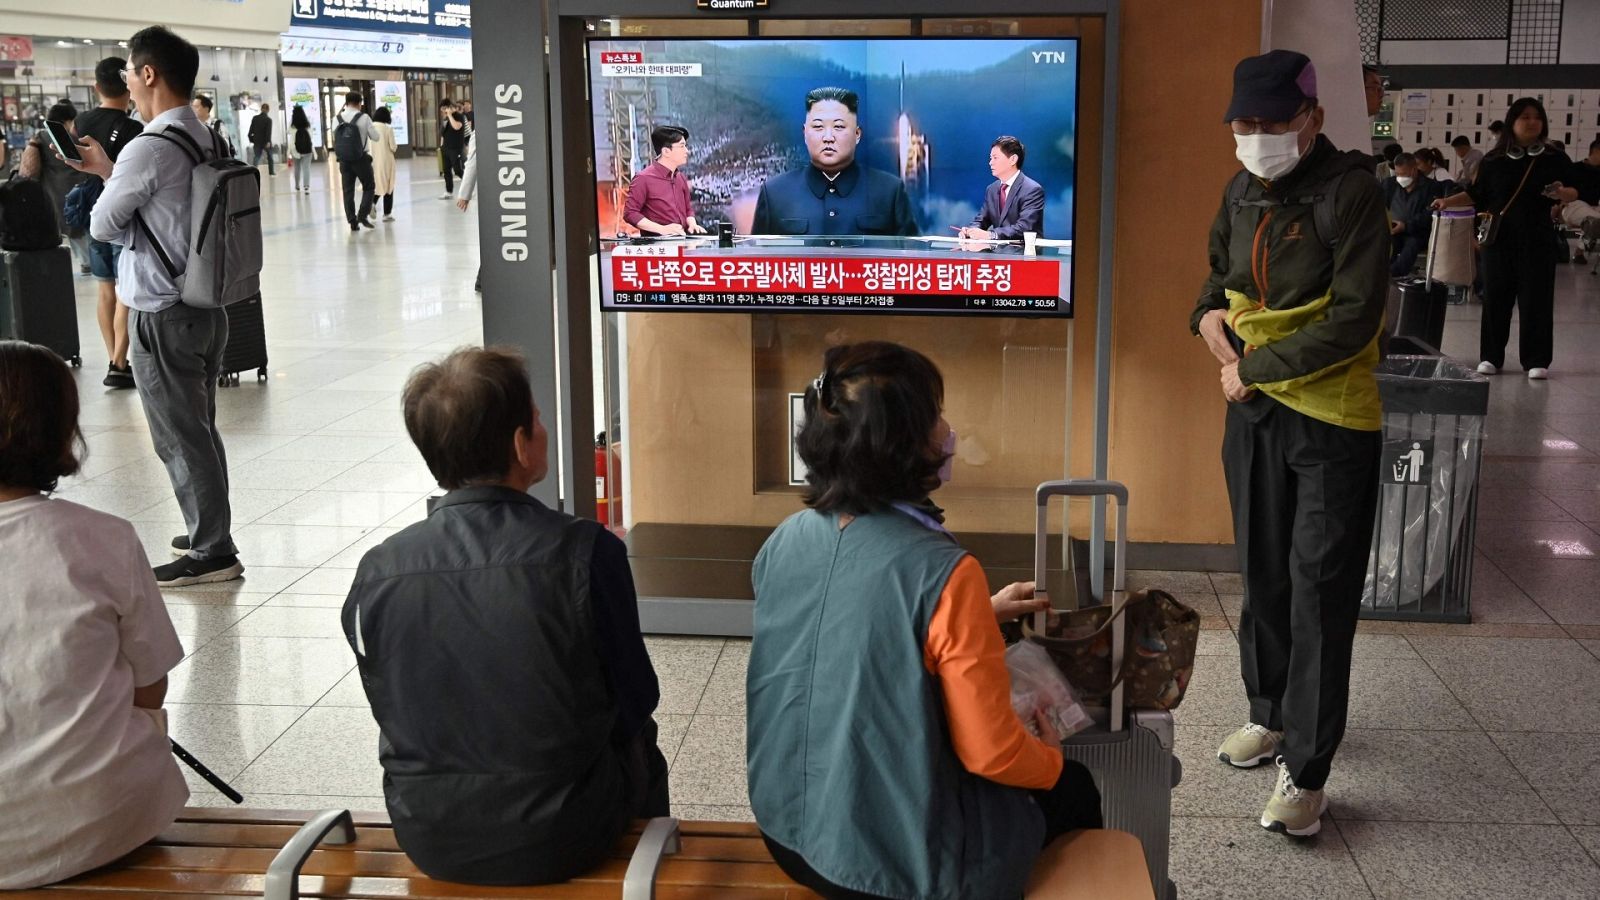 Varias personas miran una pantalla que muestra imágenes del líder norcoreano, Kim Jong Un, en la estación de tren de Seúl